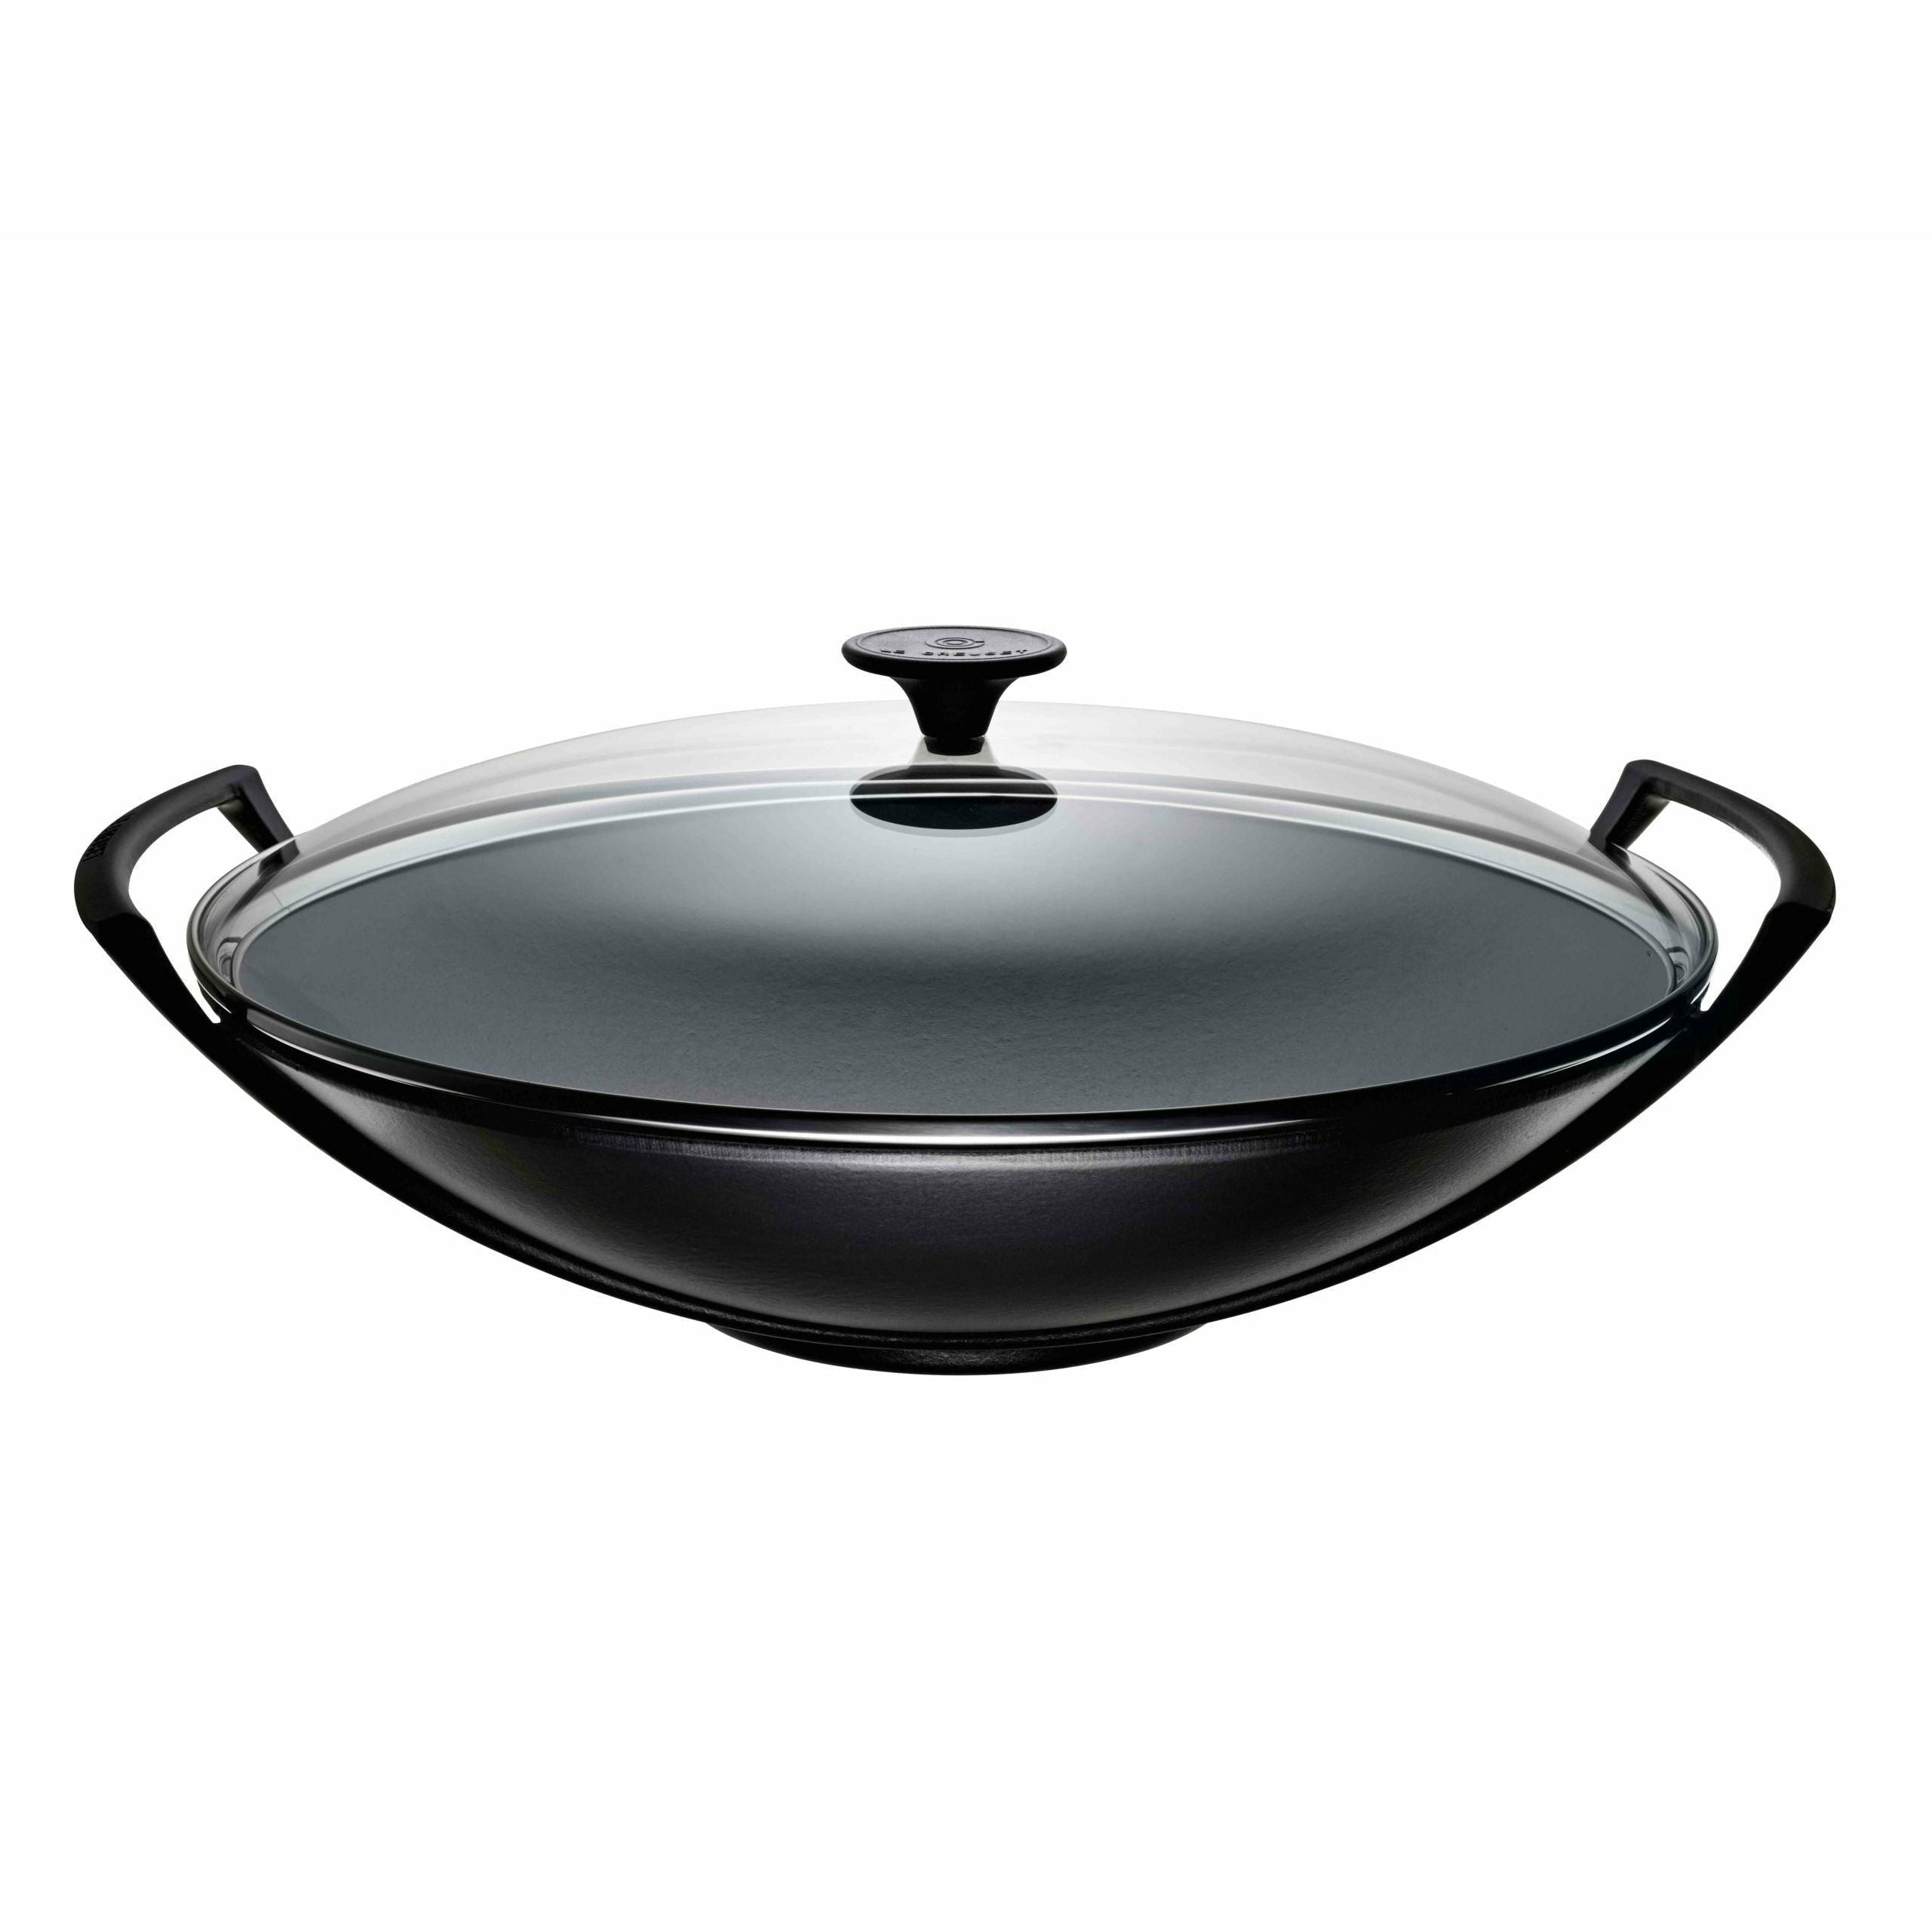 Le creuset wok med glass lokk 36 cm, svart